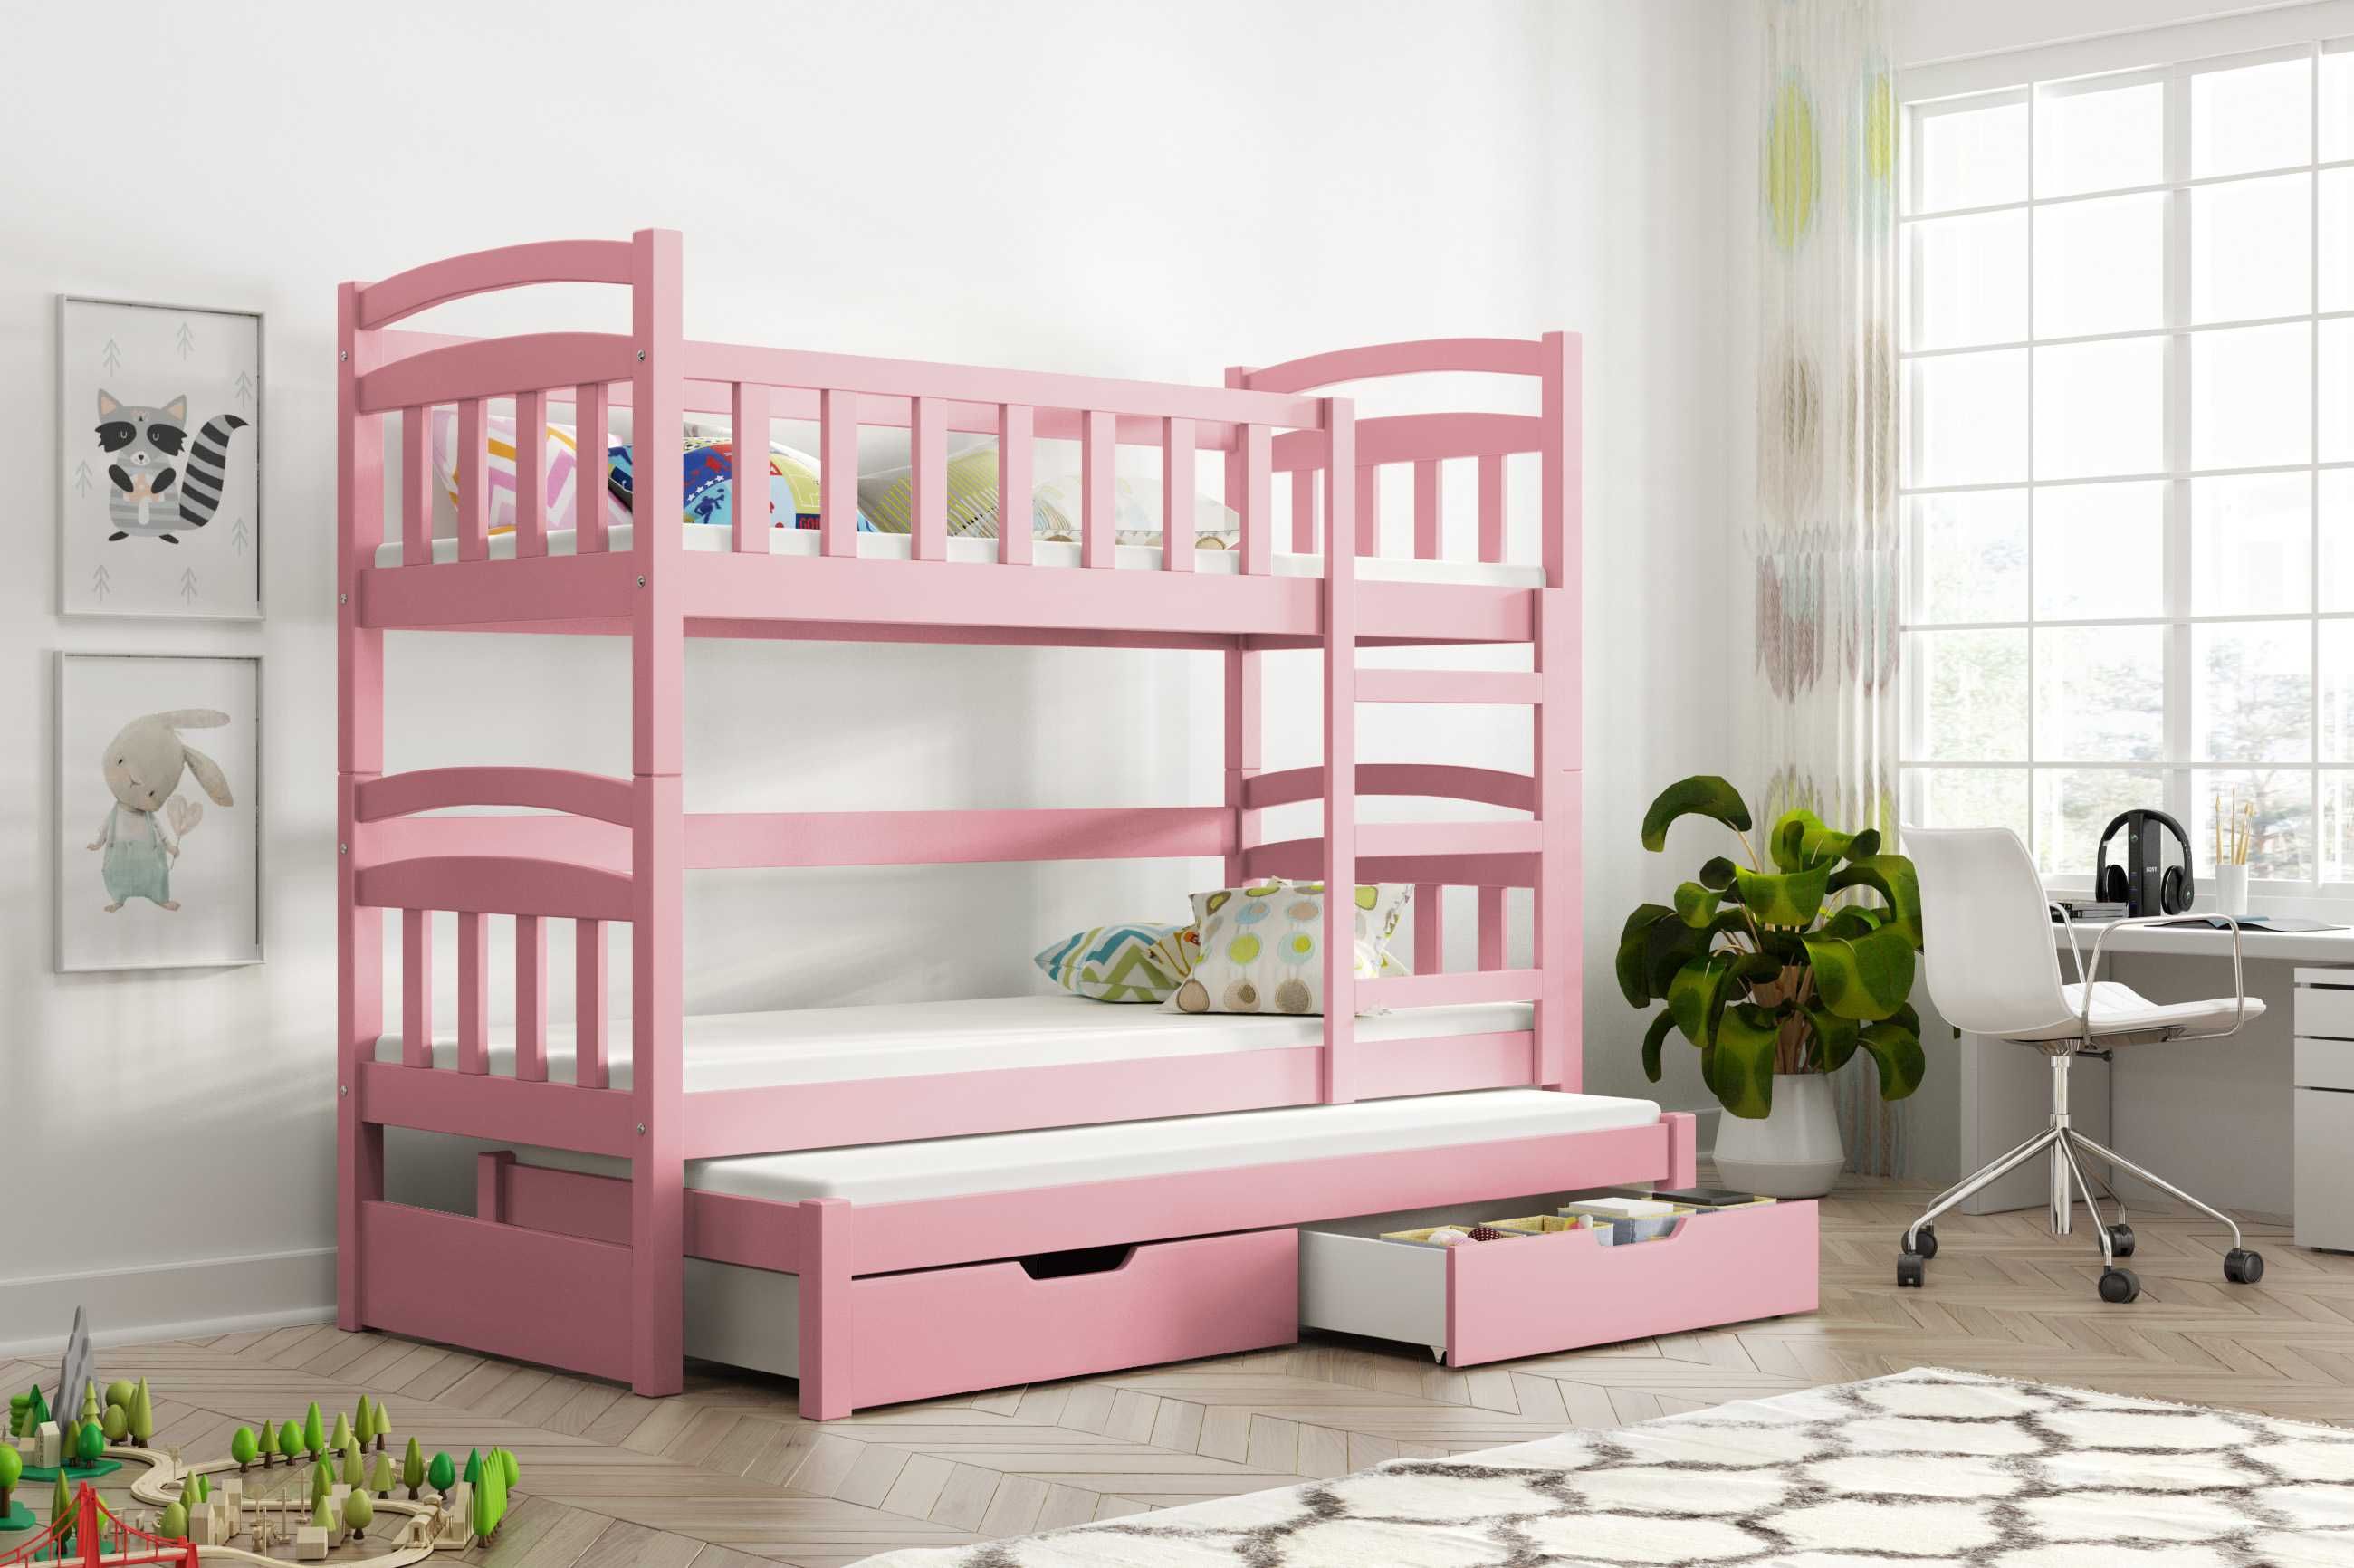 Nowe piętrowe łóżko Dawid dla 3 dzieci! Materace gratisowo